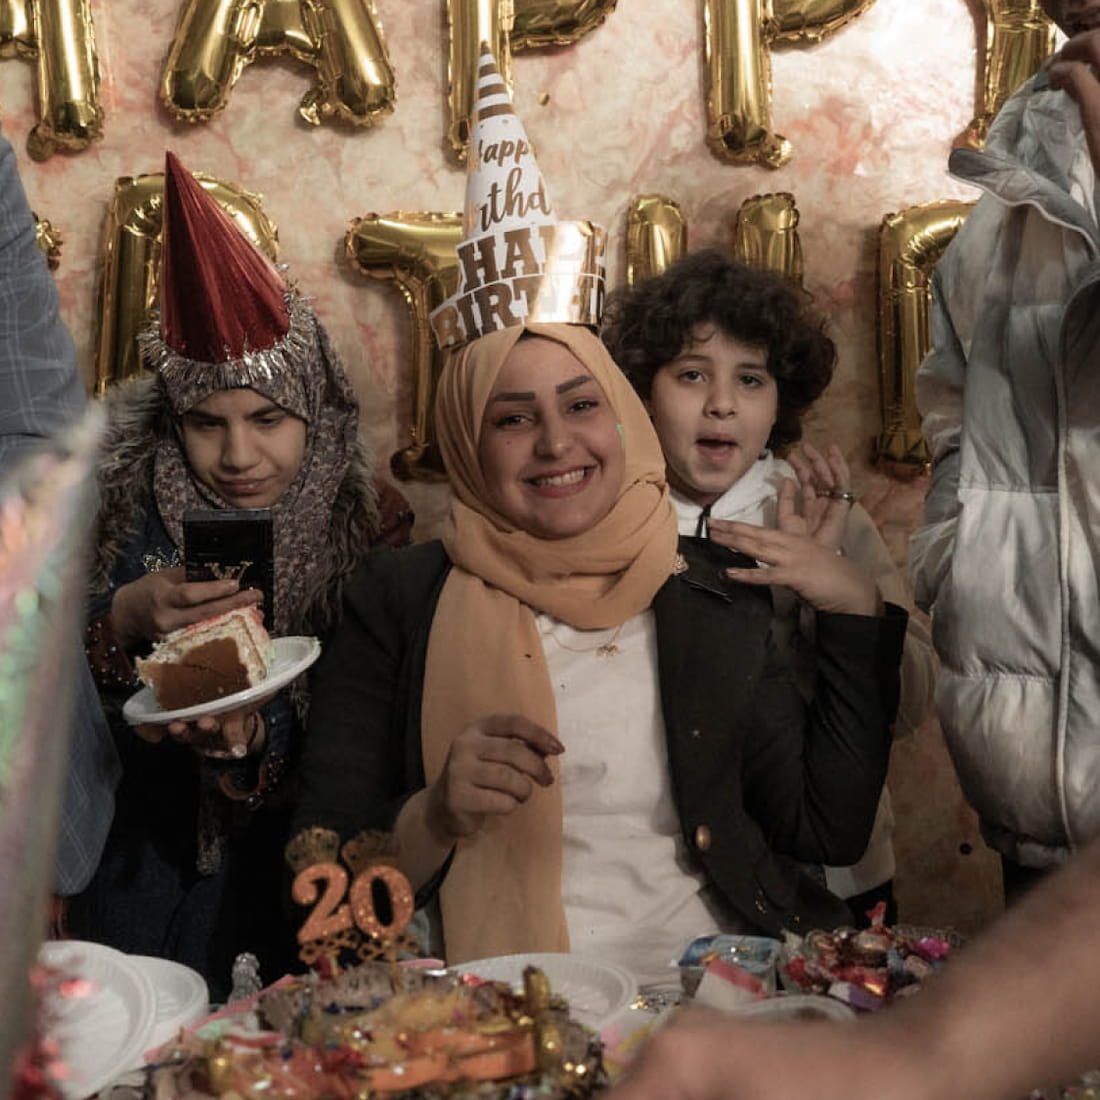 Banin Karim at her birthday celebration.